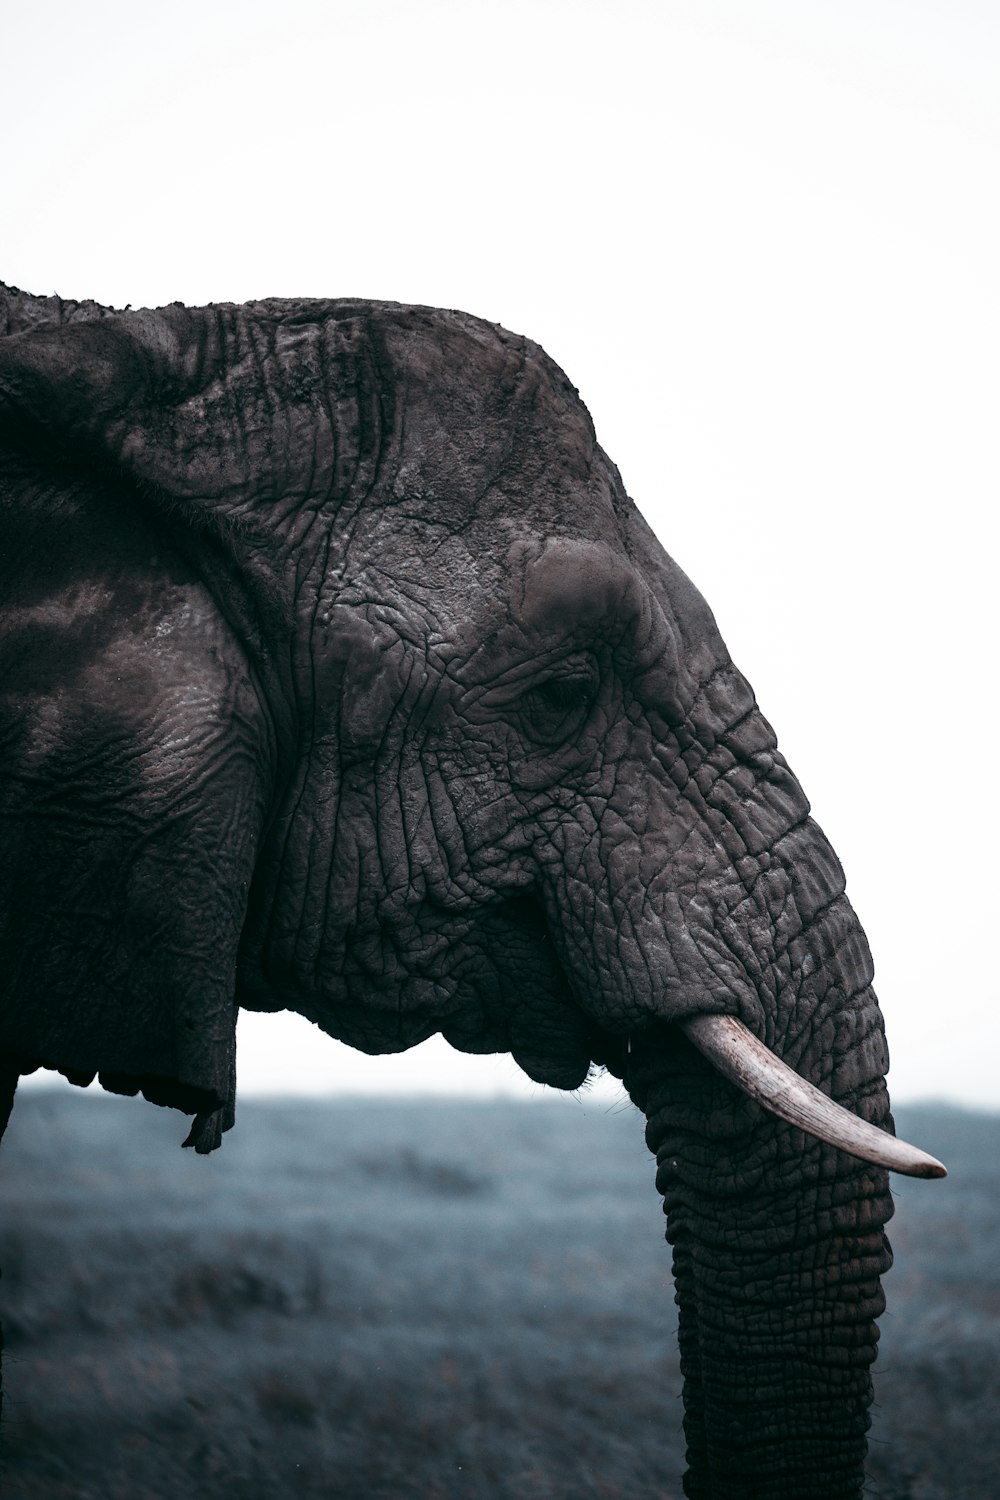 클로즈업 사진의 회색 코끼리